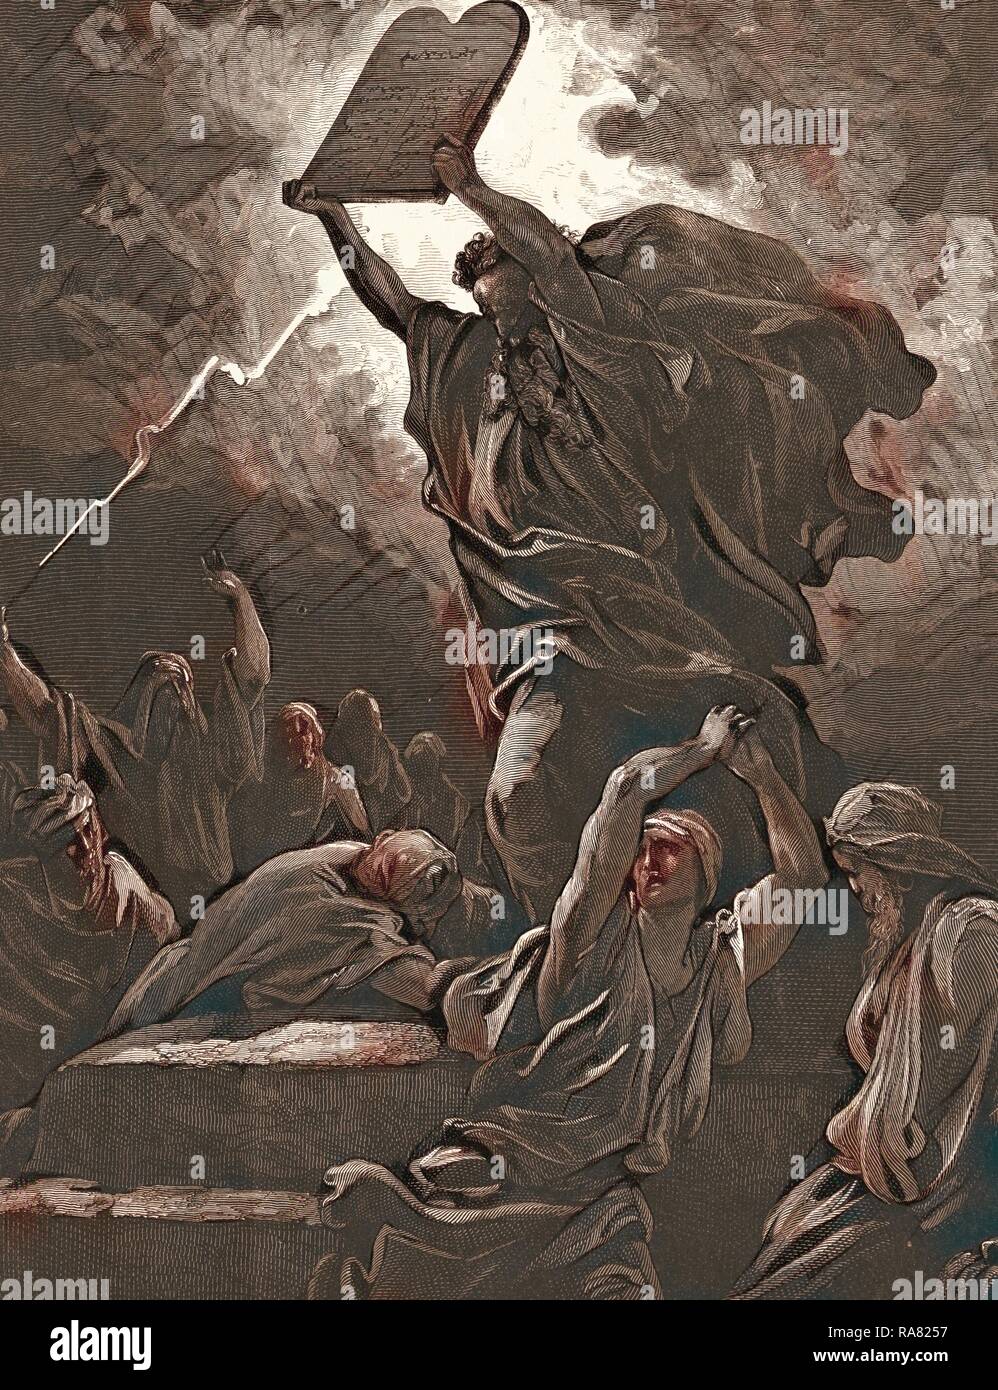 Moisés rompe las tablas de la ley, por Gustave Doré, 1832 - 1883, el  francés. Grabado de la Biblia. 1870, Arte reinventado Fotografía de stock -  Alamy